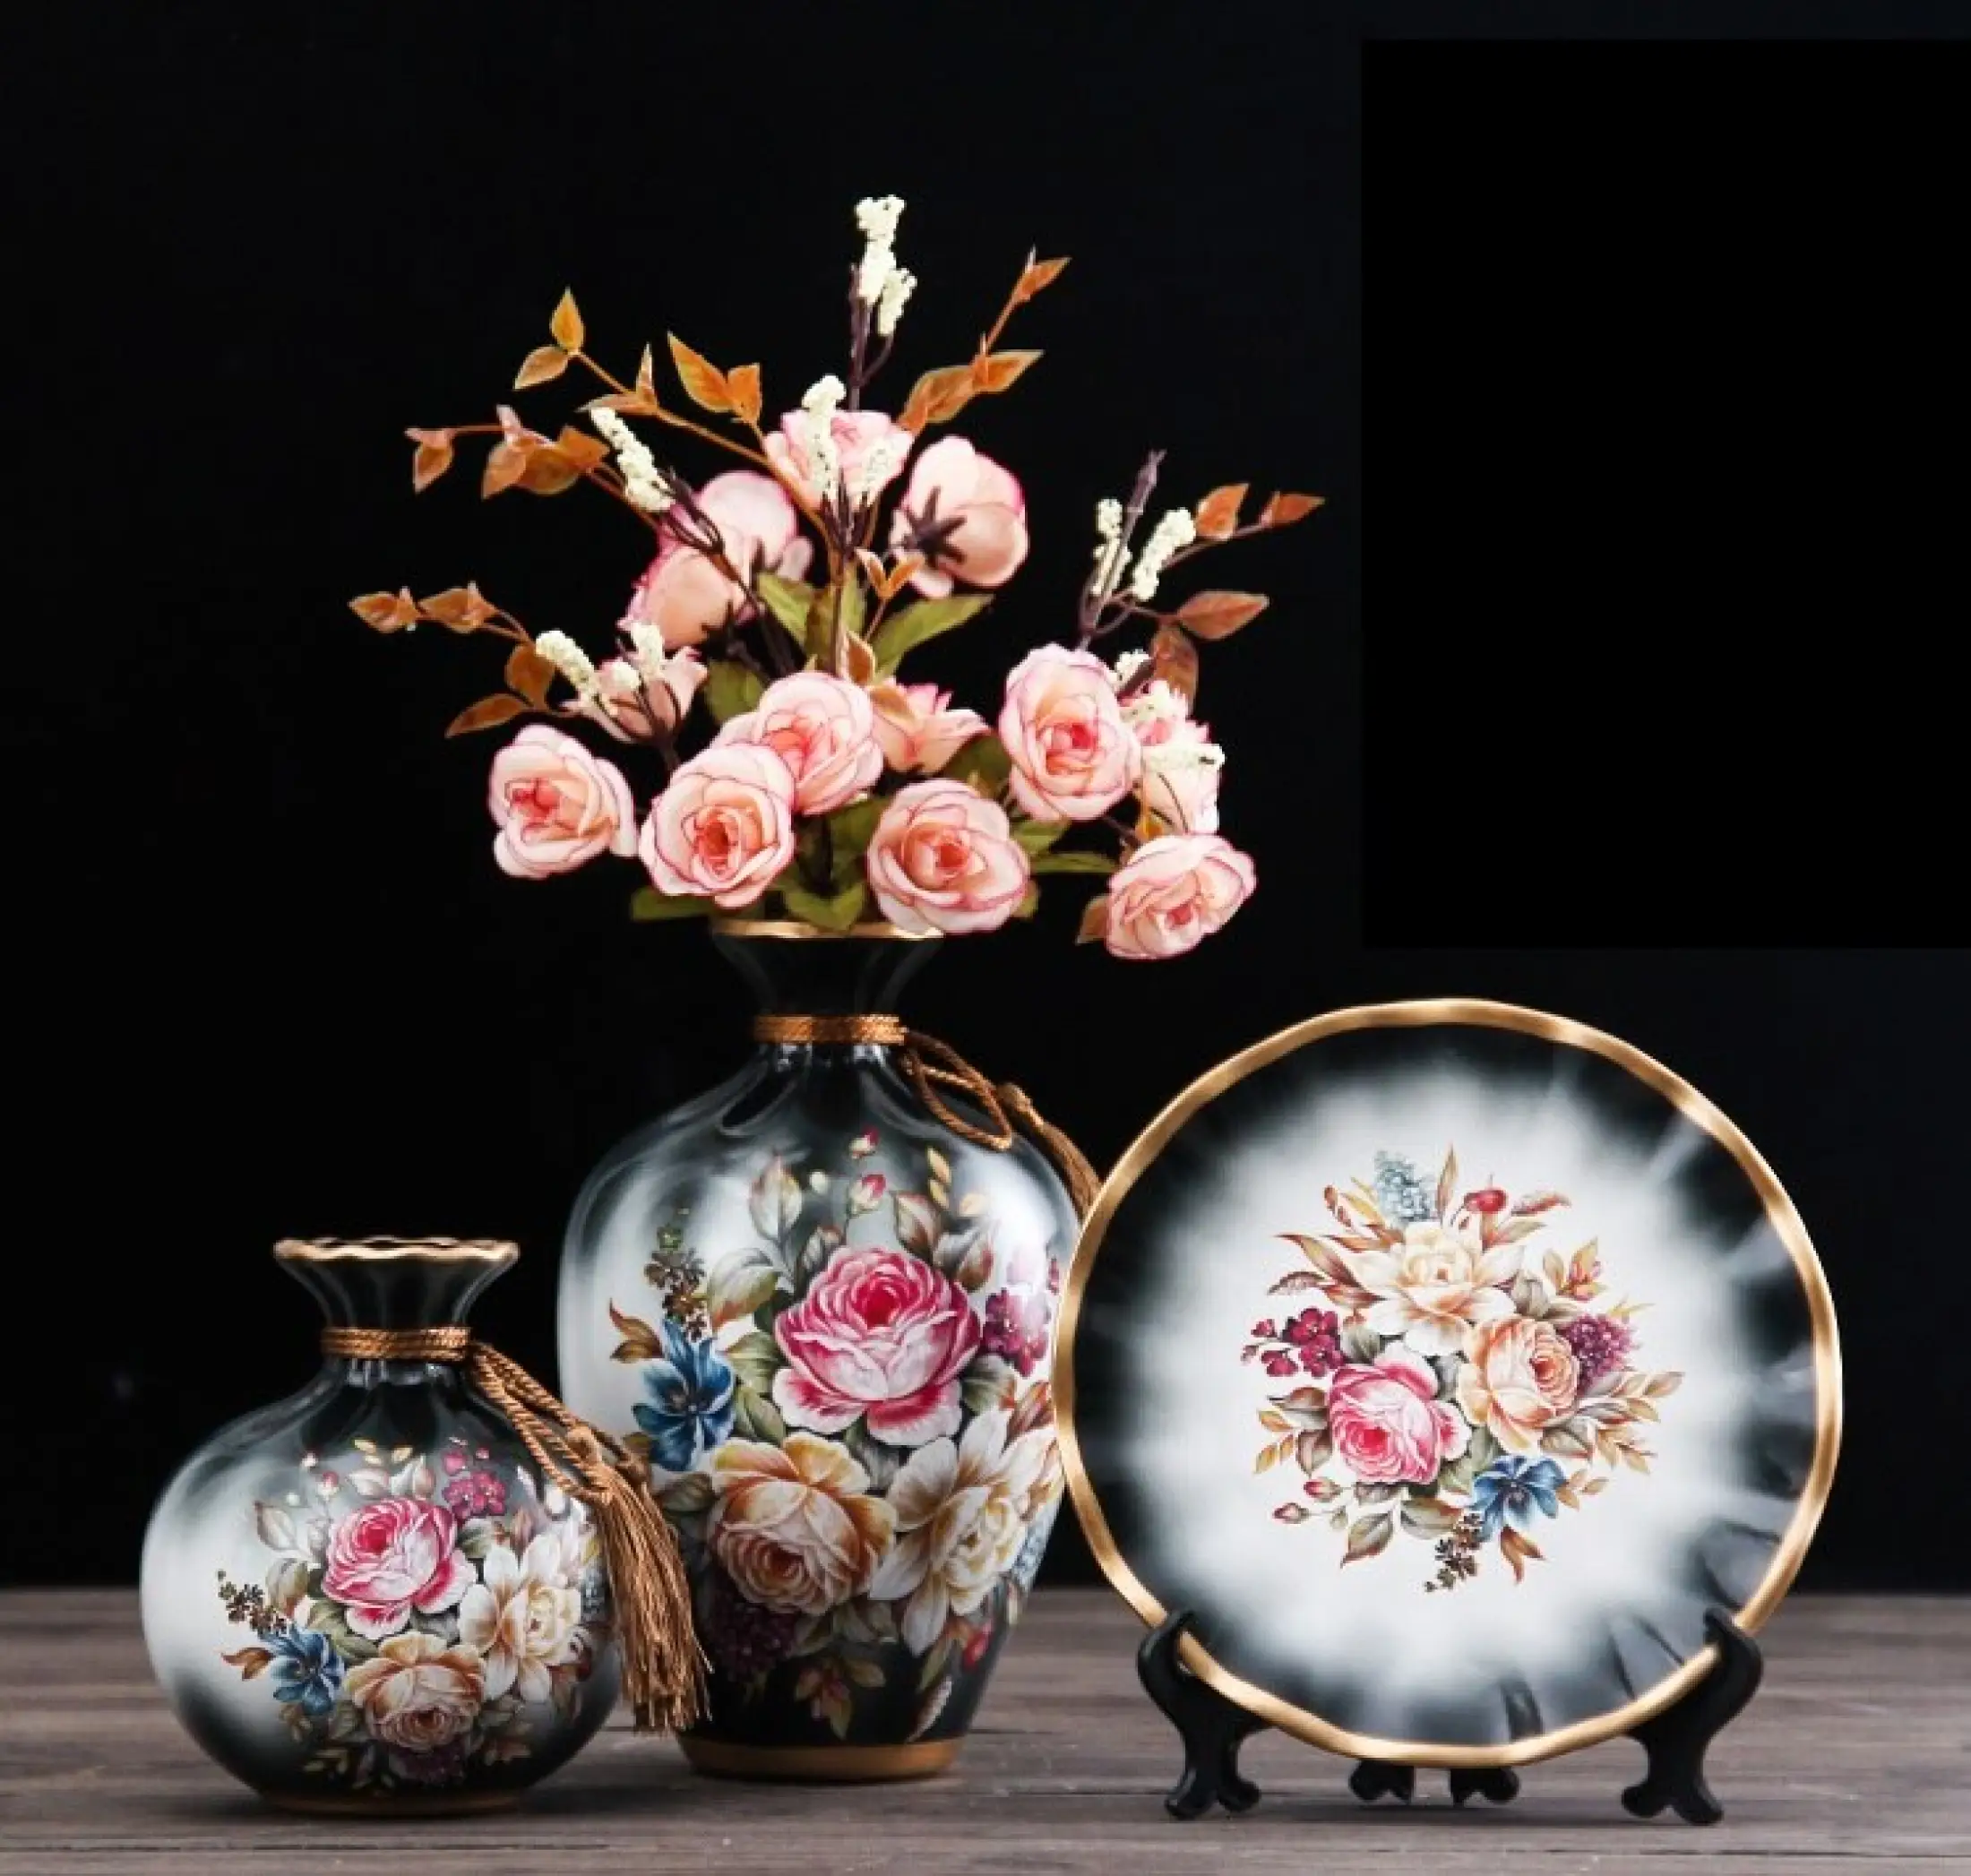 3Pcs/Set European Ceramic Vase Dried Flowers Flower Arrangement Wobble Plate Living Room Entrance Ornaments Home Decorations